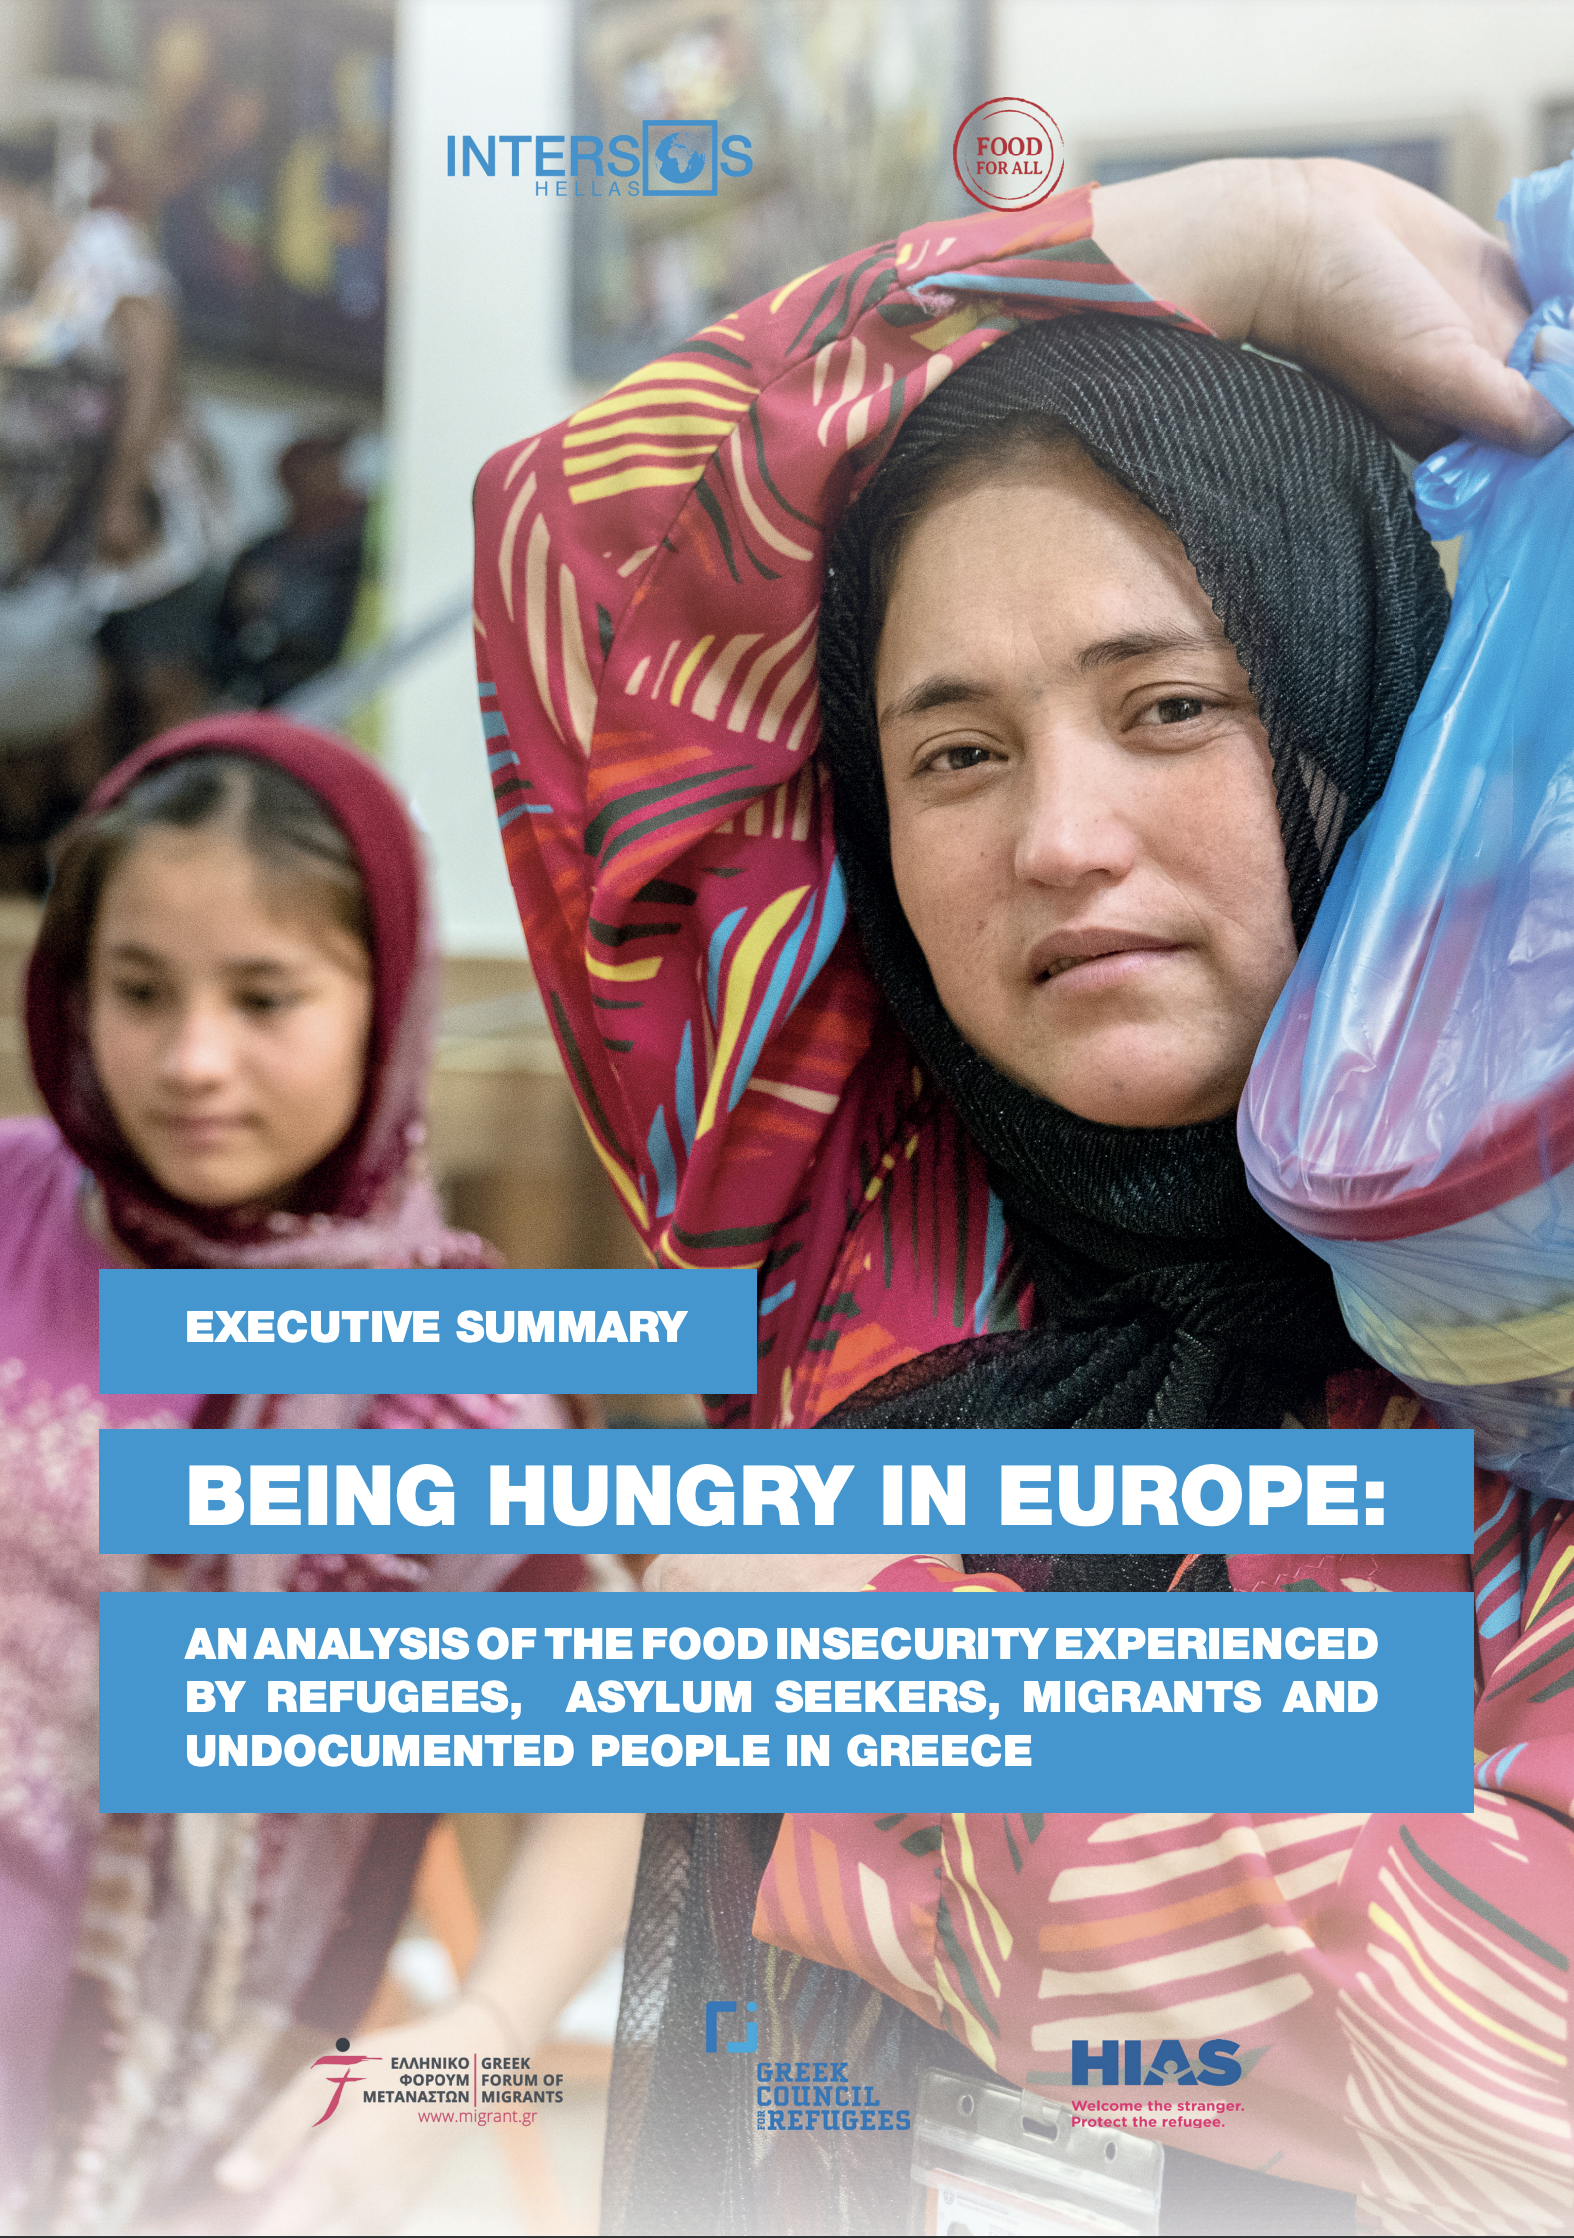 Νέα έκθεση αποκαλύπτει την επισιτιστική ανασφάλεια που αντιμετωπίζουν πρόσφυγες, αιτούντες άσυλο και άνθρωποι «χωρίς χαρτιά» στην Ελλάδα